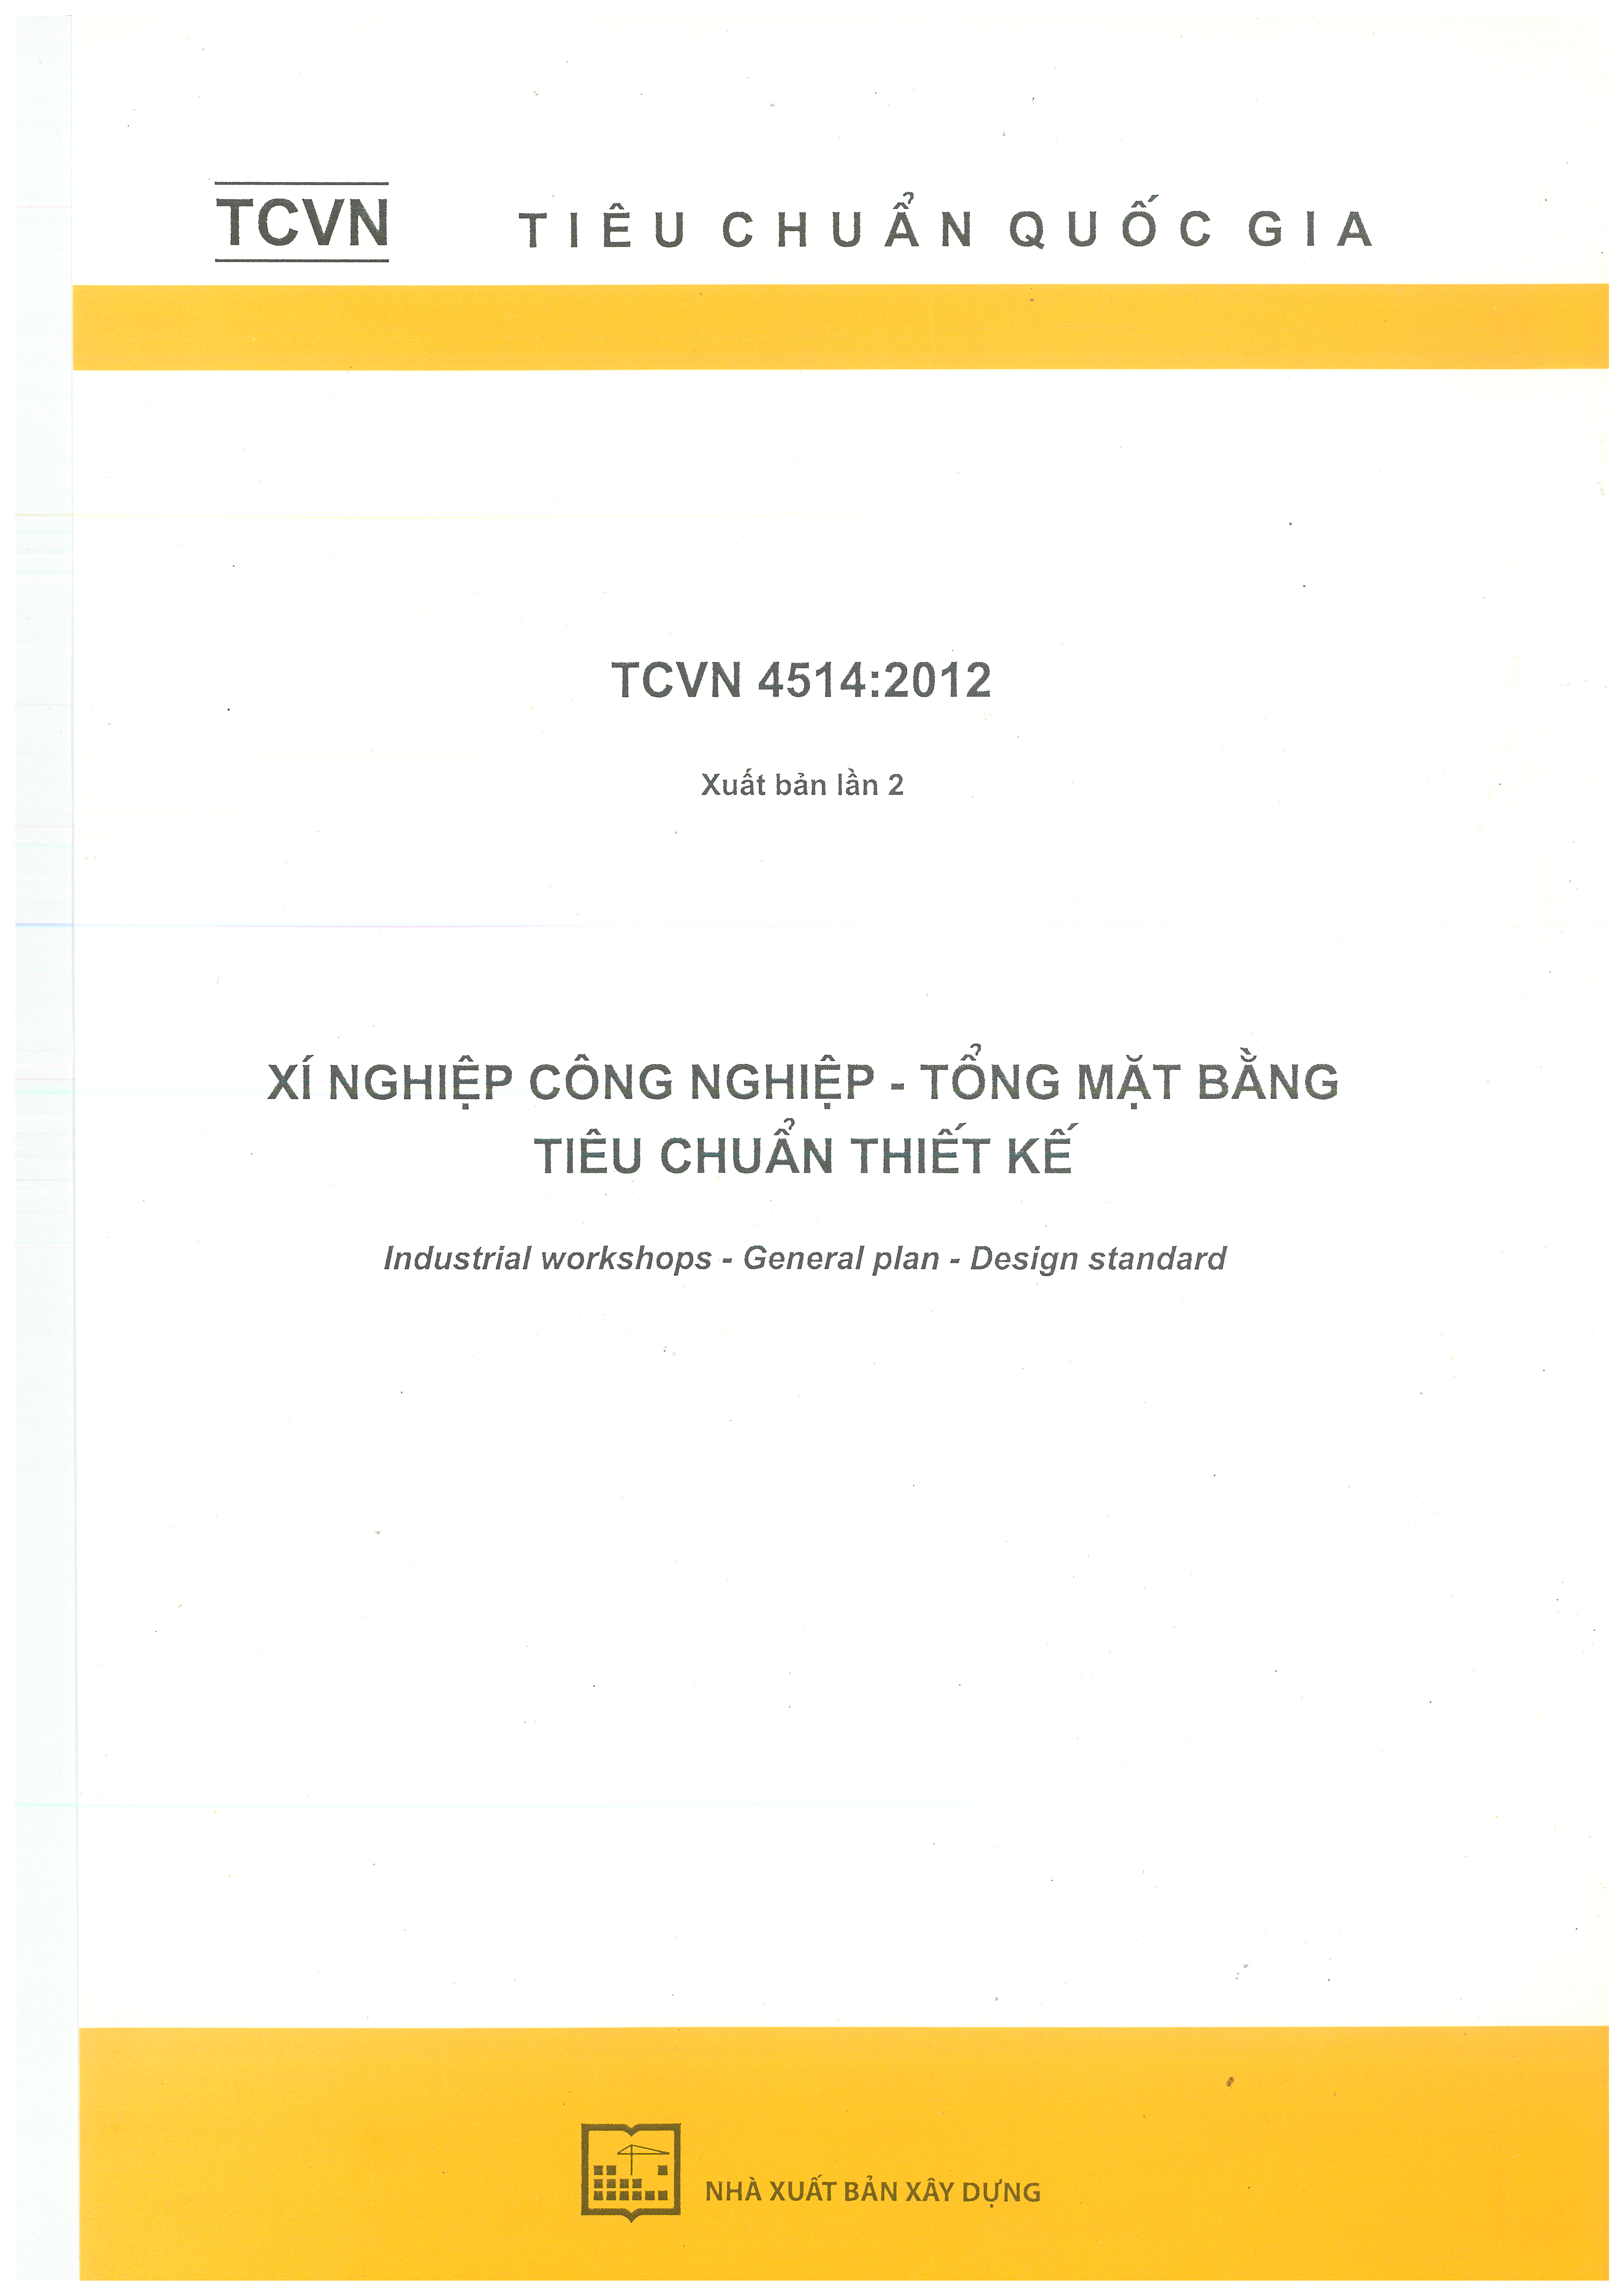 TCVN 4514:2012 Xí nghiệp công nghiệp – tổng mặt bằng – Tiêu chuẩn thiết kế 